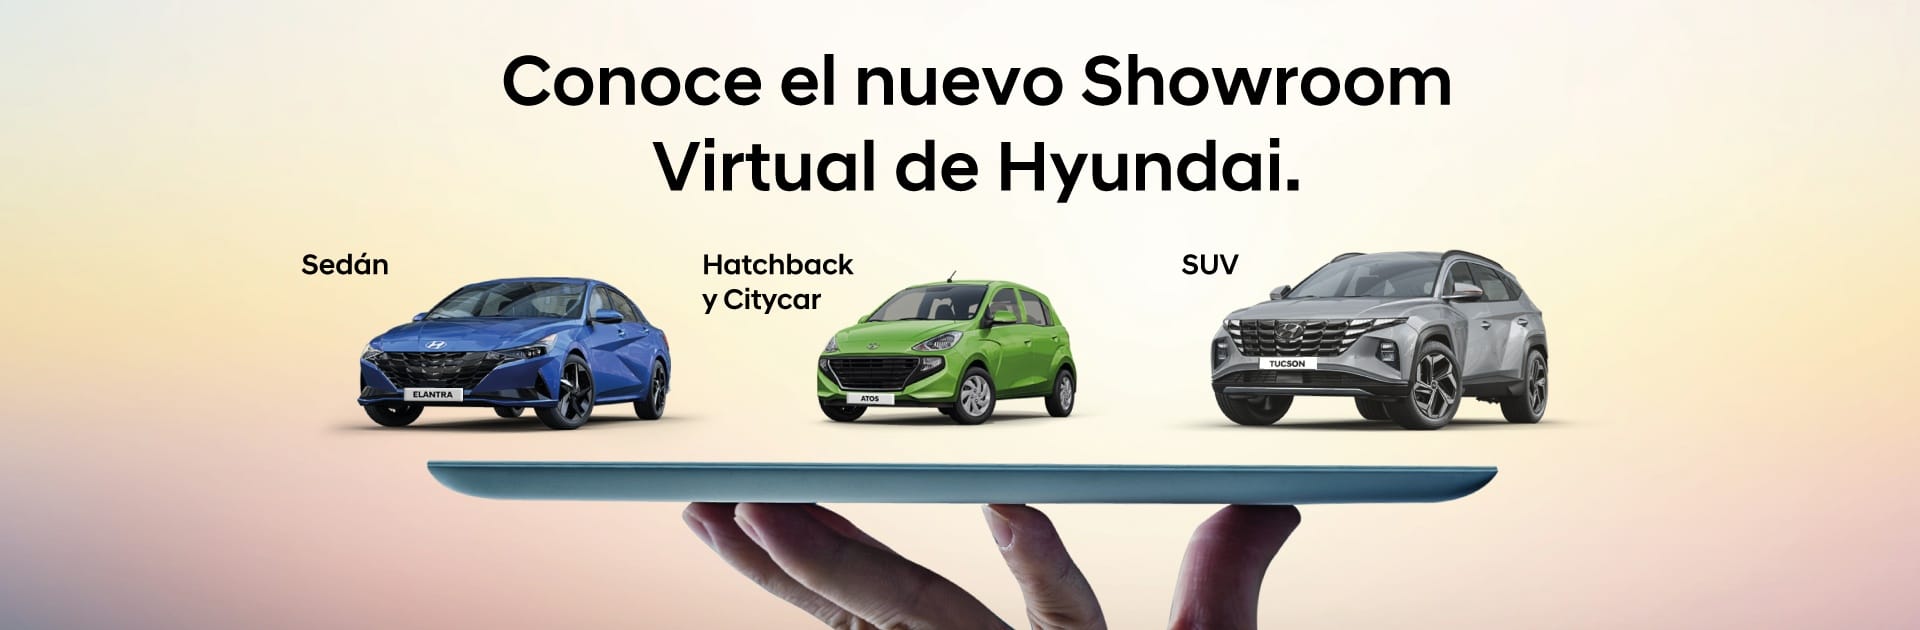 Conoce el nuevo Showroom Virtual de Hyundai